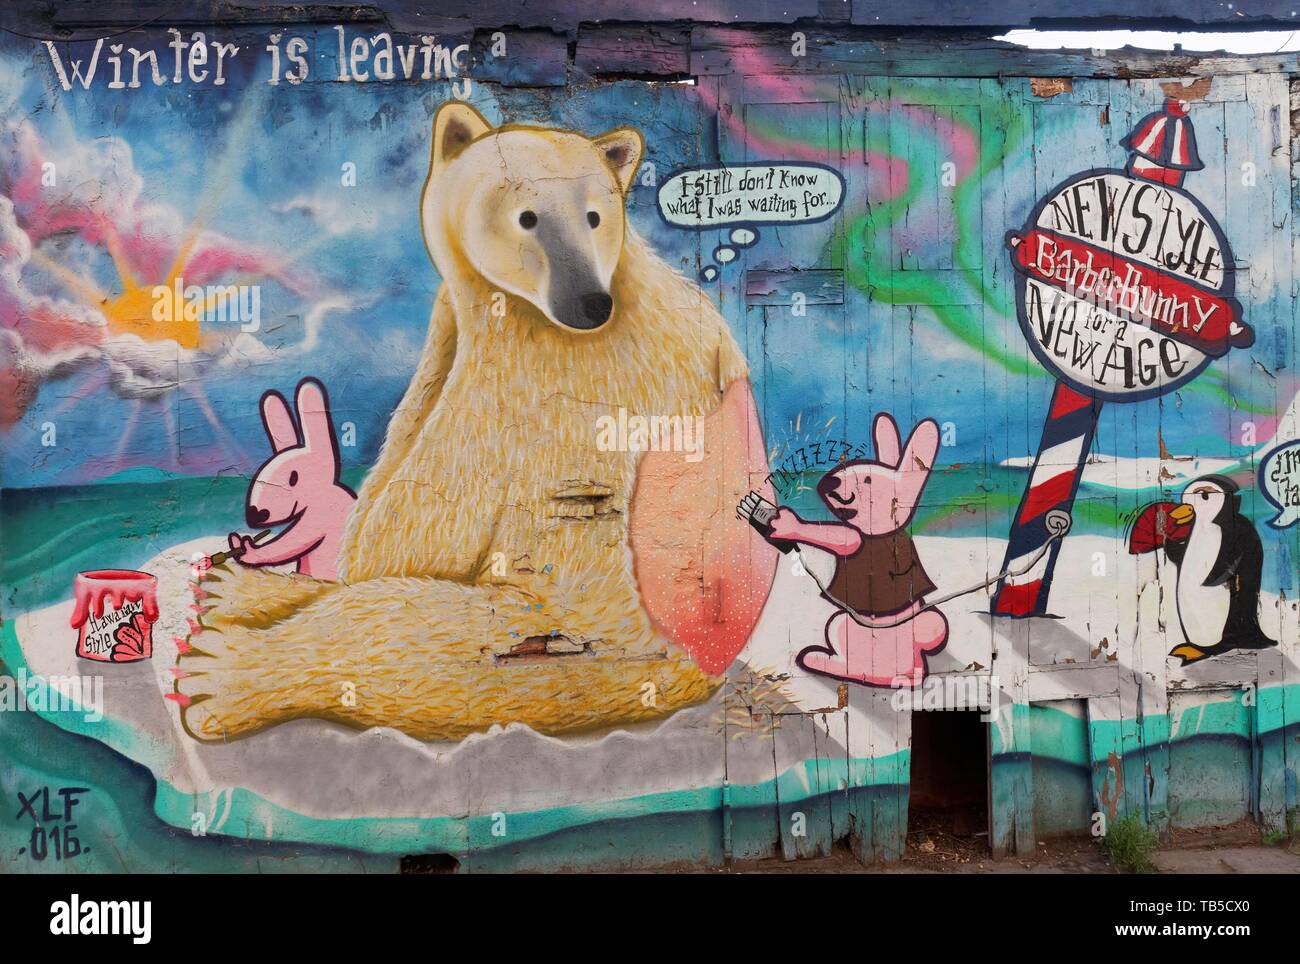 L'ours se trouve dans le soleil, la fourrure est rasés, fresque sur le changement climatique, l'art de la rue, vieille ville El Carme, Valencia, Espagne Banque D'Images